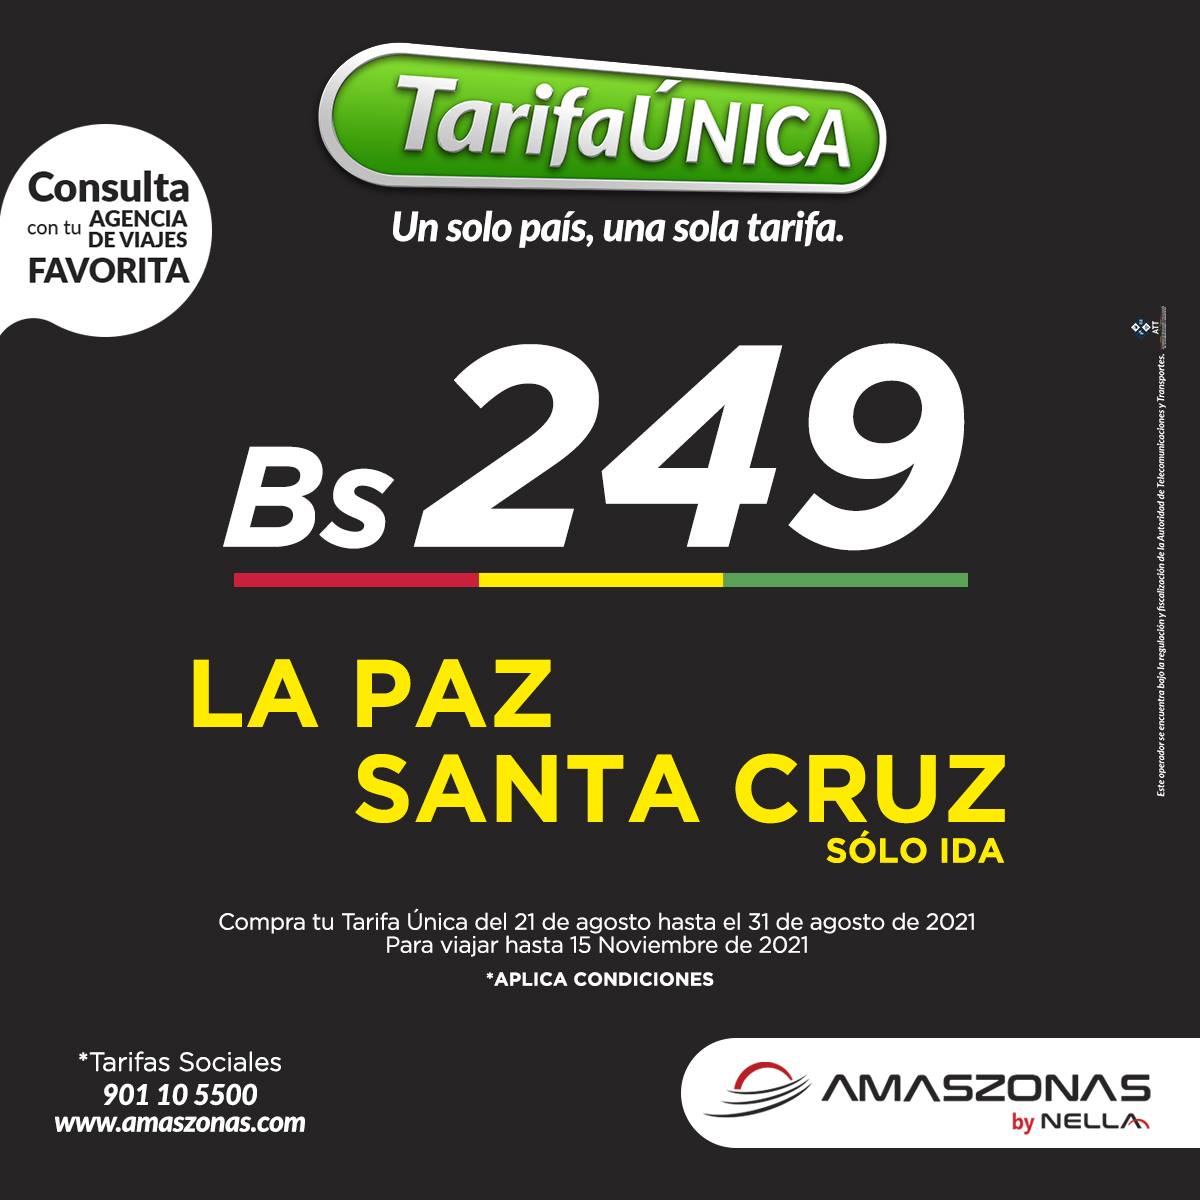 Los festejos se anticipan con La #TarifaÚnica de #Amaszonas por que es la tarifa que te mereces
Compra de forma anticipada en amaszonas.com, a través de nuestro call center, puntos de venta o agencia de viaje favorita.
#24DeSeptiembre #MesAniversario